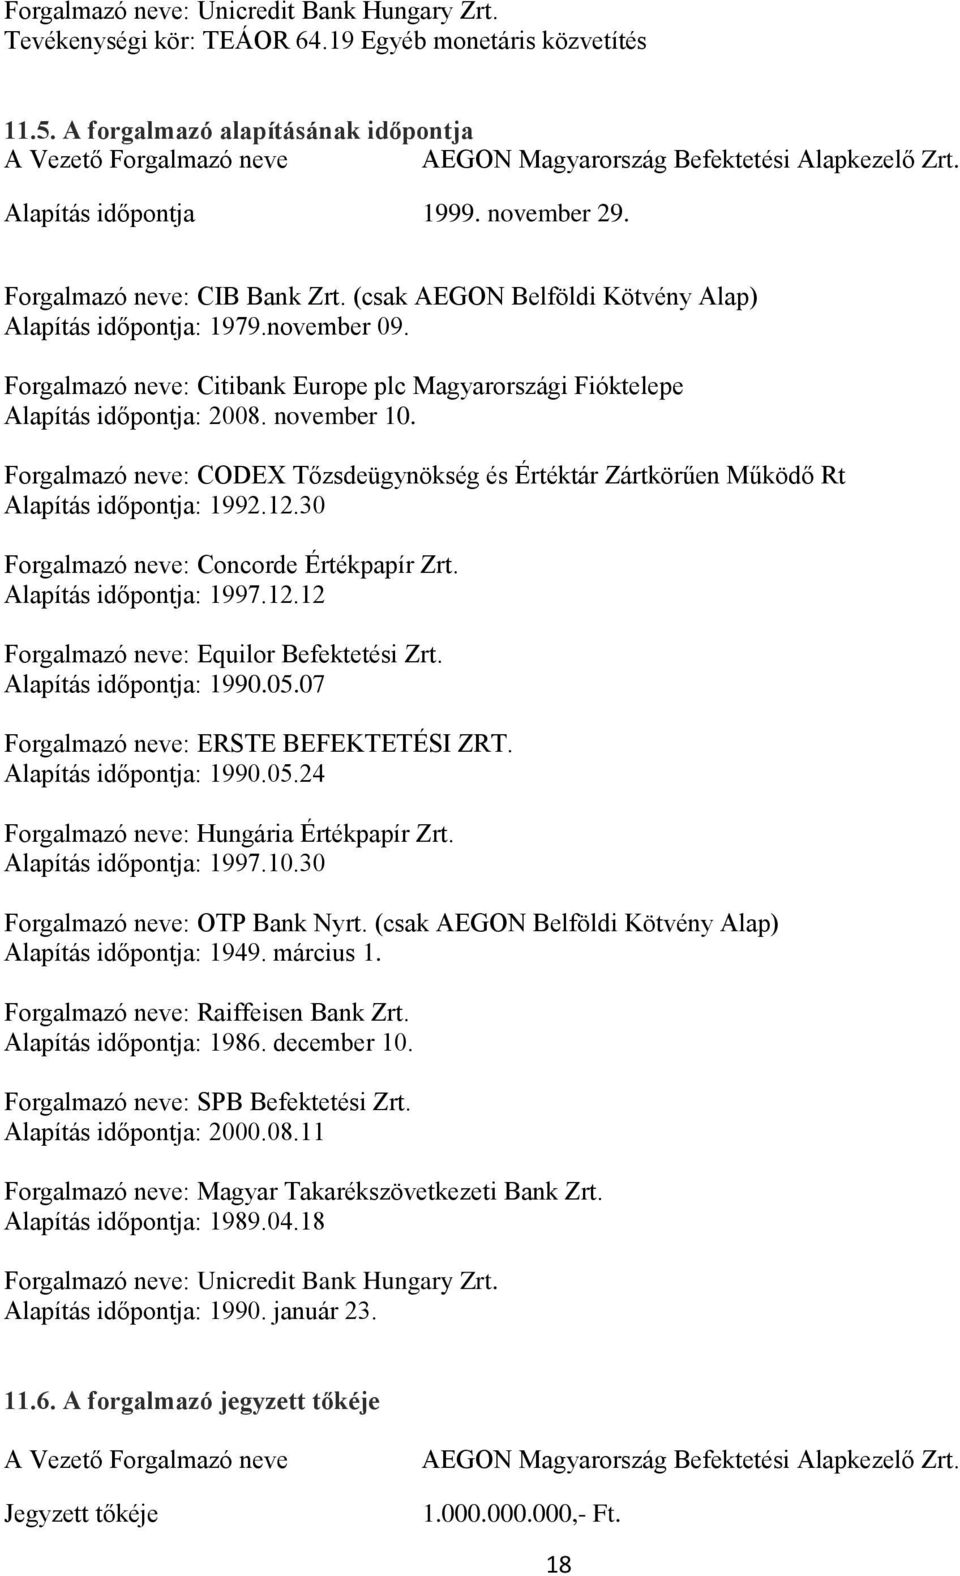 (csak AEGON Belföldi Kötvény Alap) Alapítás időpontja: 1979.november 09. Forgalmazó neve: Citibank Europe plc Magyarországi Fióktelepe Alapítás időpontja: 2008. november 10.